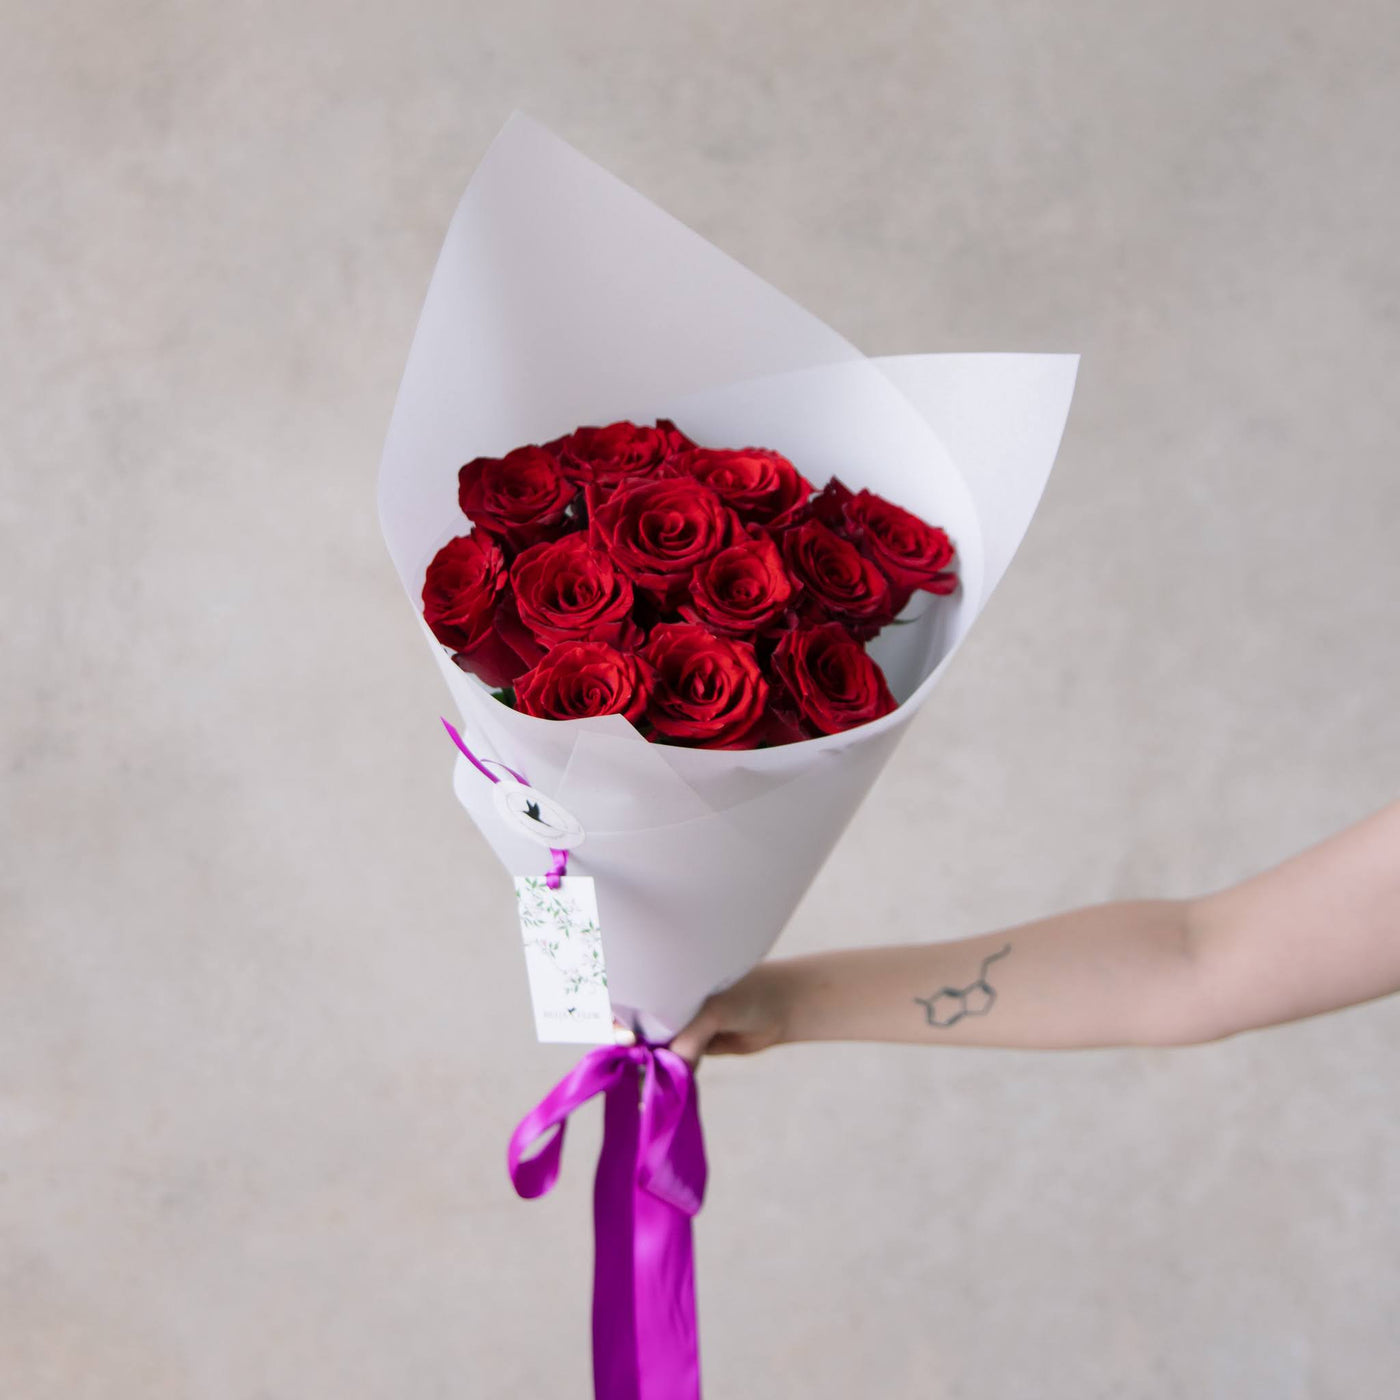 Beija Flor Valentine's Day Dozen Rose Bouquet